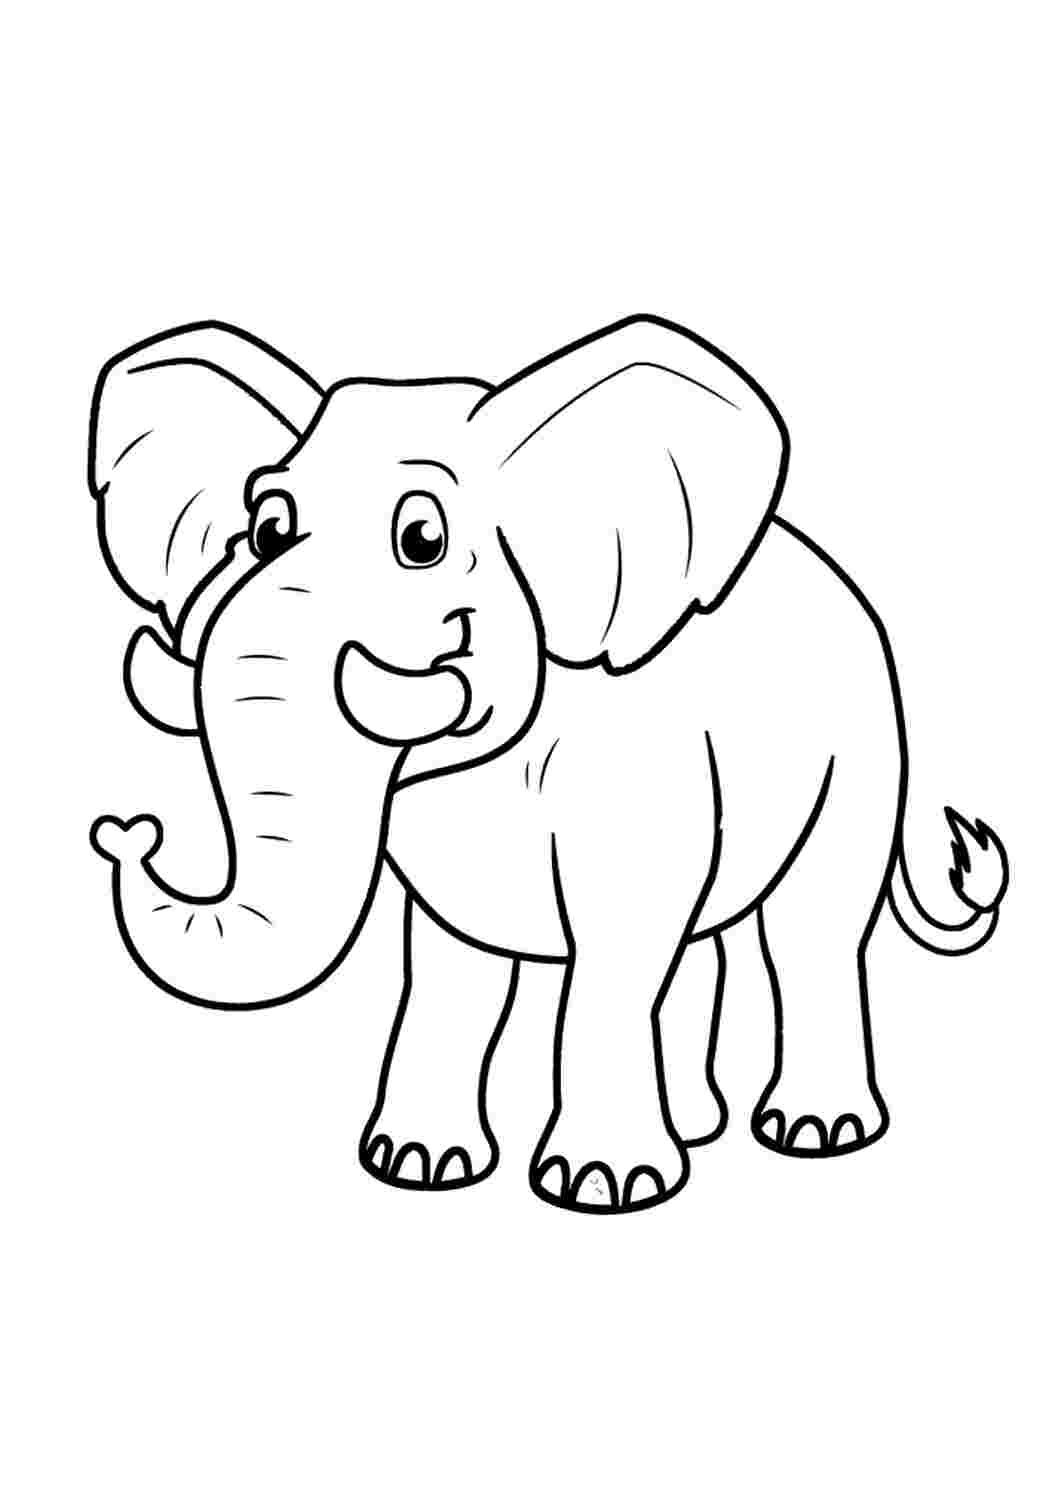 Раскраска Слон: распечатать бесплатно, скачать